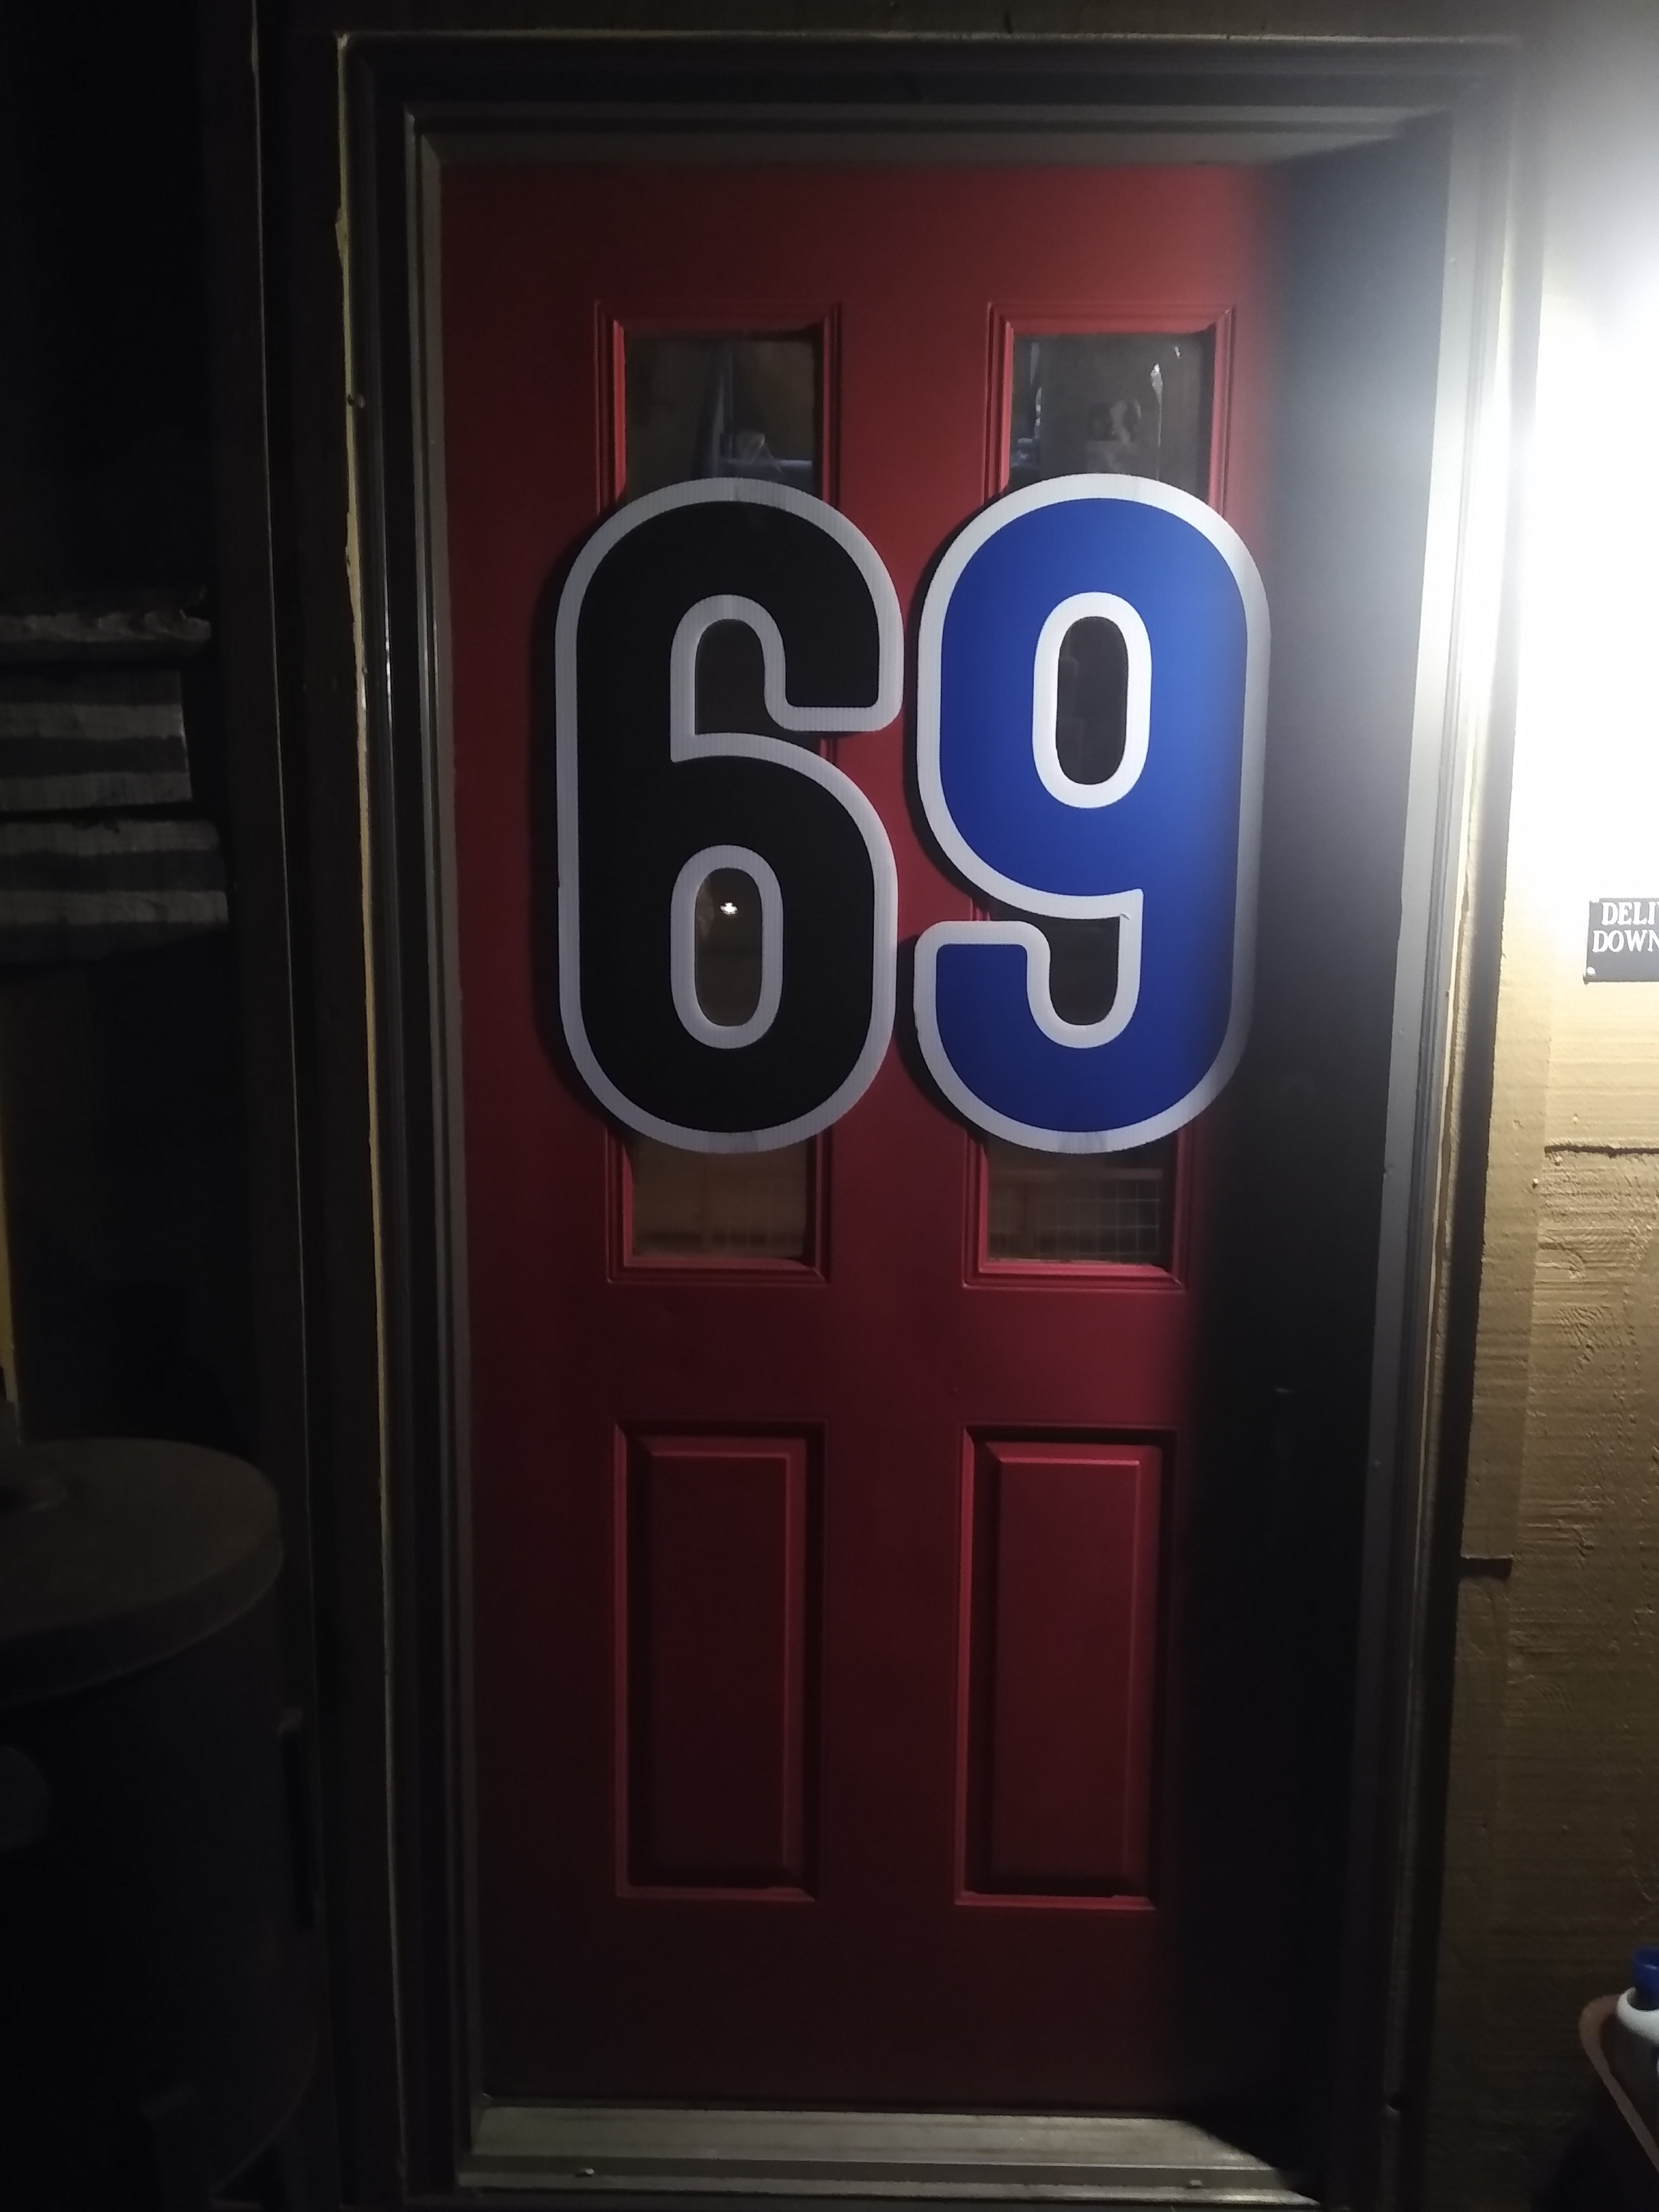 69 On Door